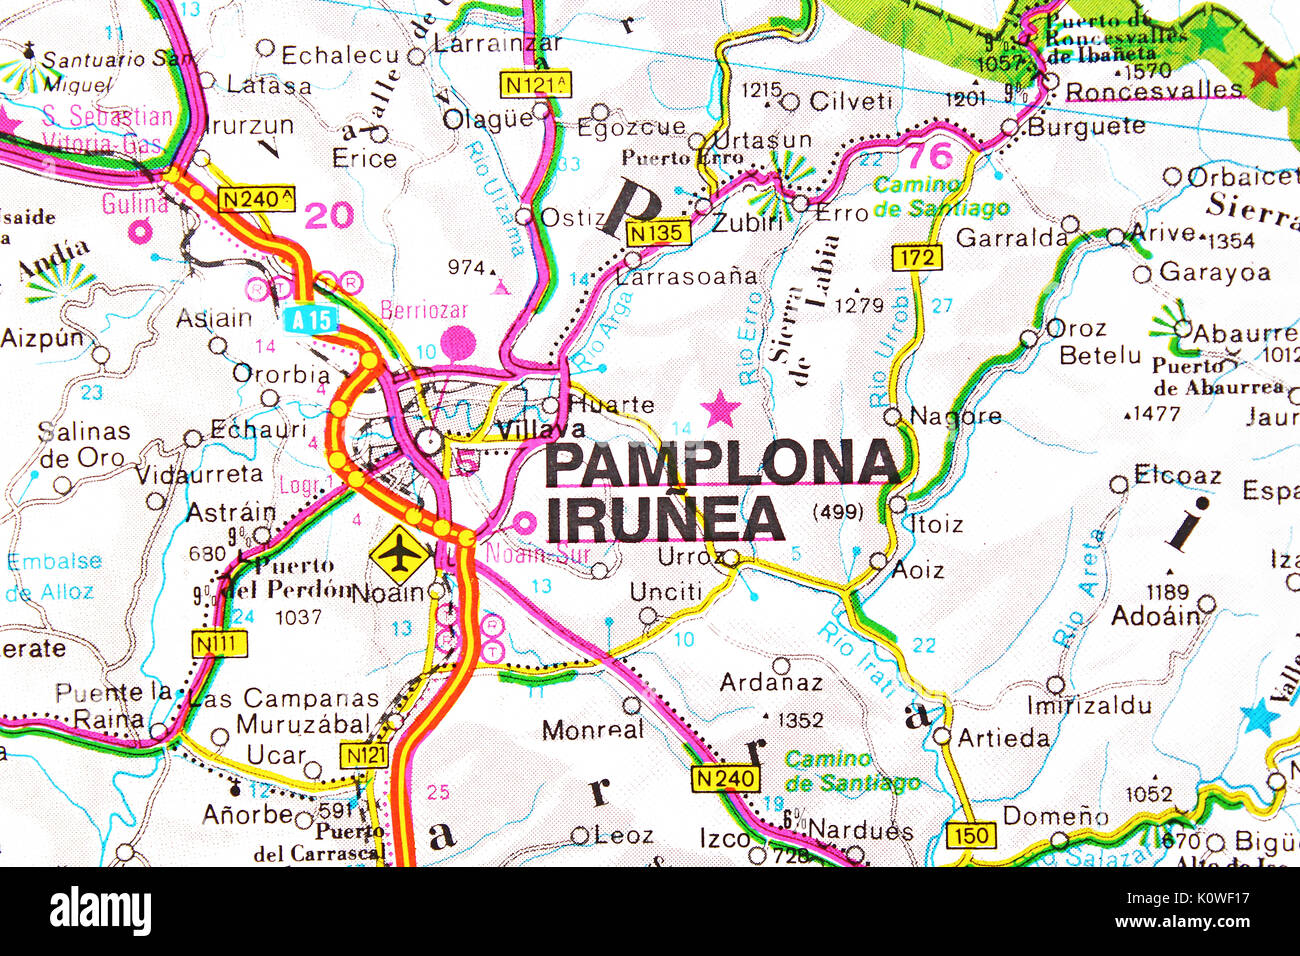 Pamplona Irunea map city map road map Stock Photo - Alamy